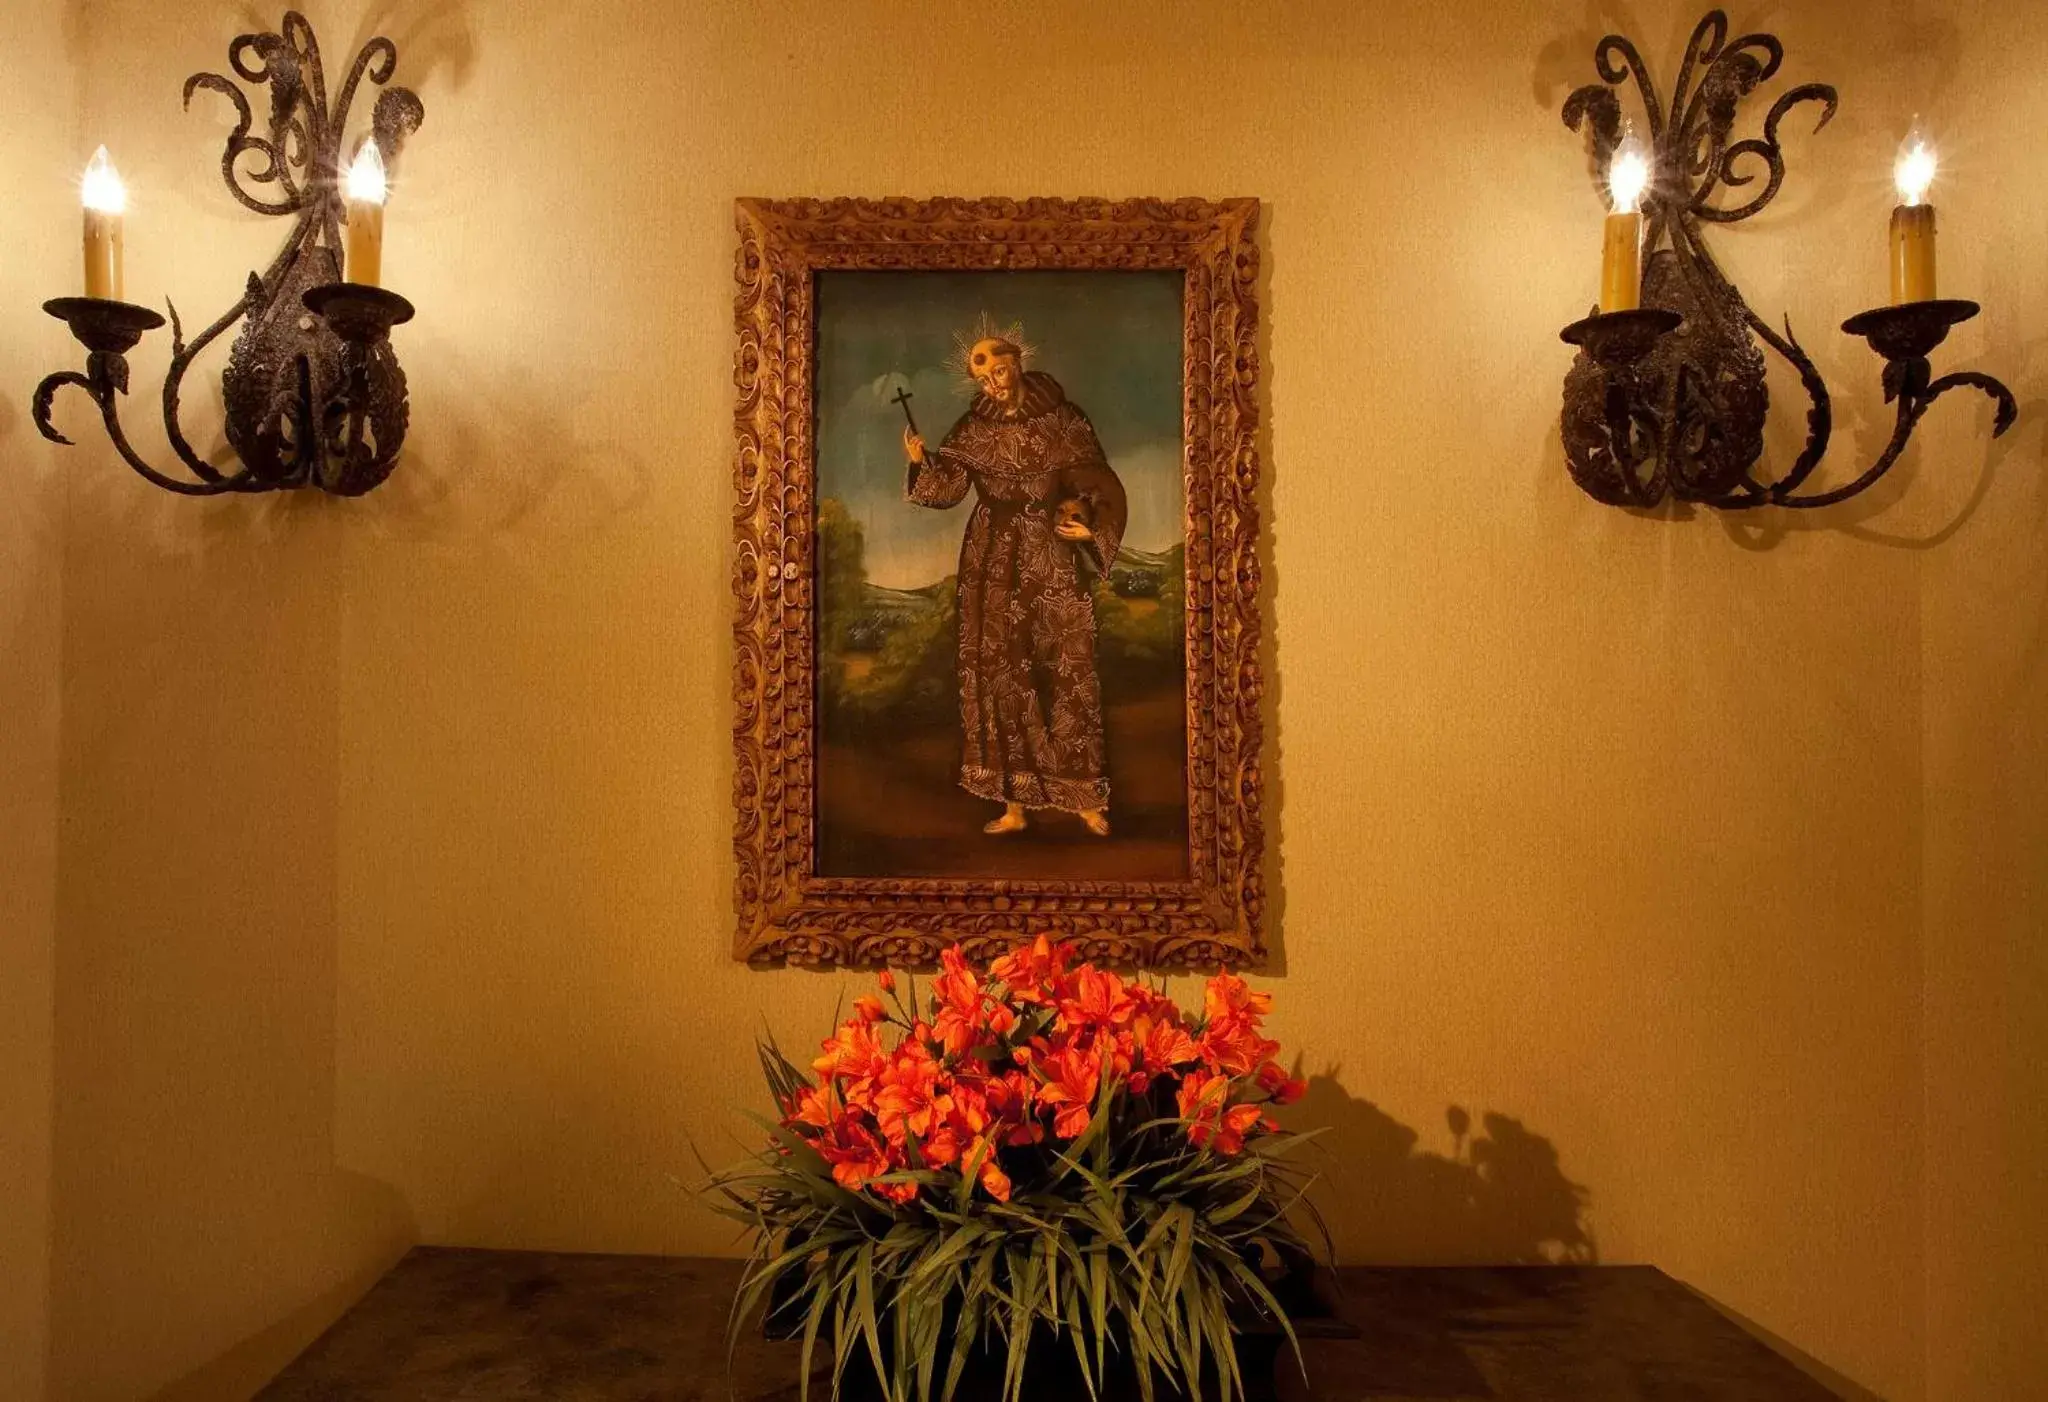 Decorative detail in Hotel Encanto de Las Cruces